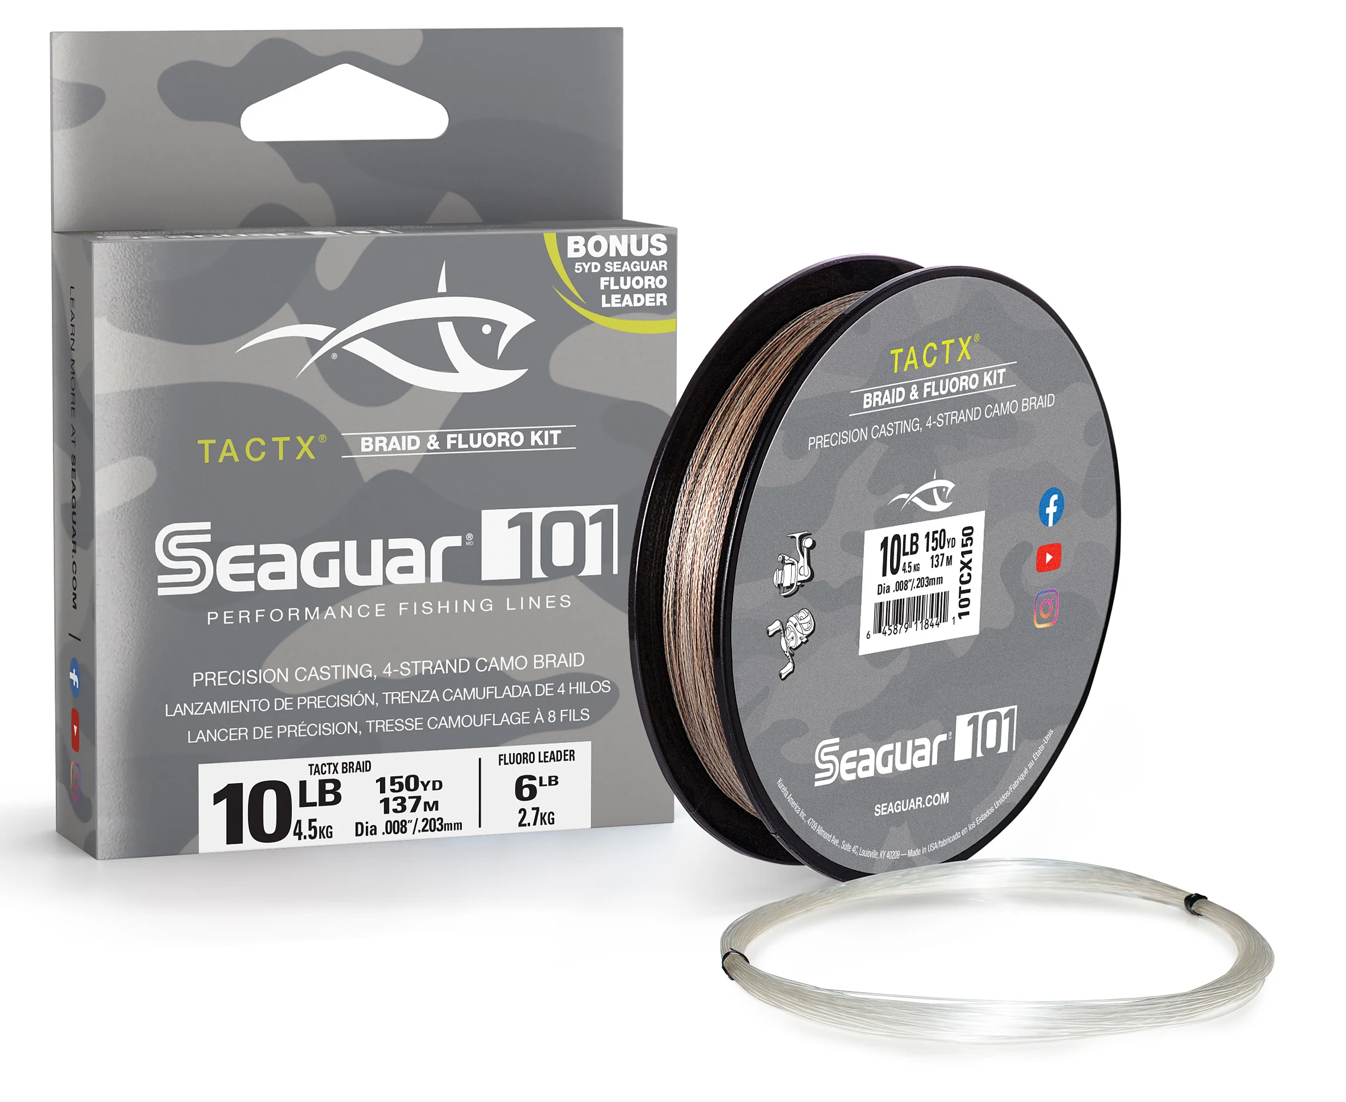 Seaguar Tactx 编织物和氟碳套件